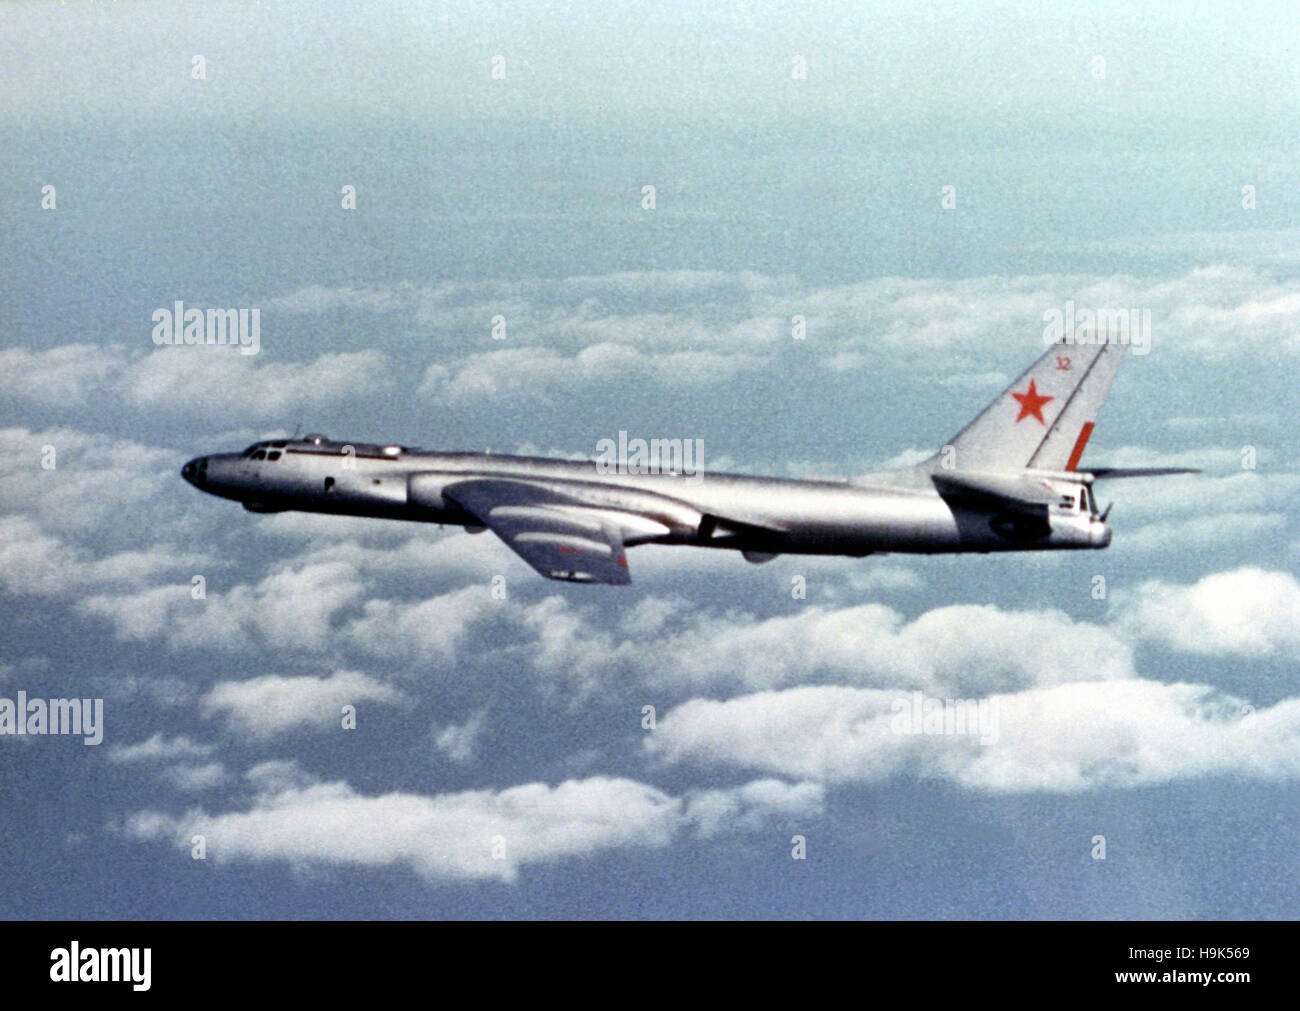 Tu sovietica-16 e aeromobili. La Tupolev Tu-16, bimotore jet bombardiere strategico utilizzato dall'Unione Sovietica. Foto Stock